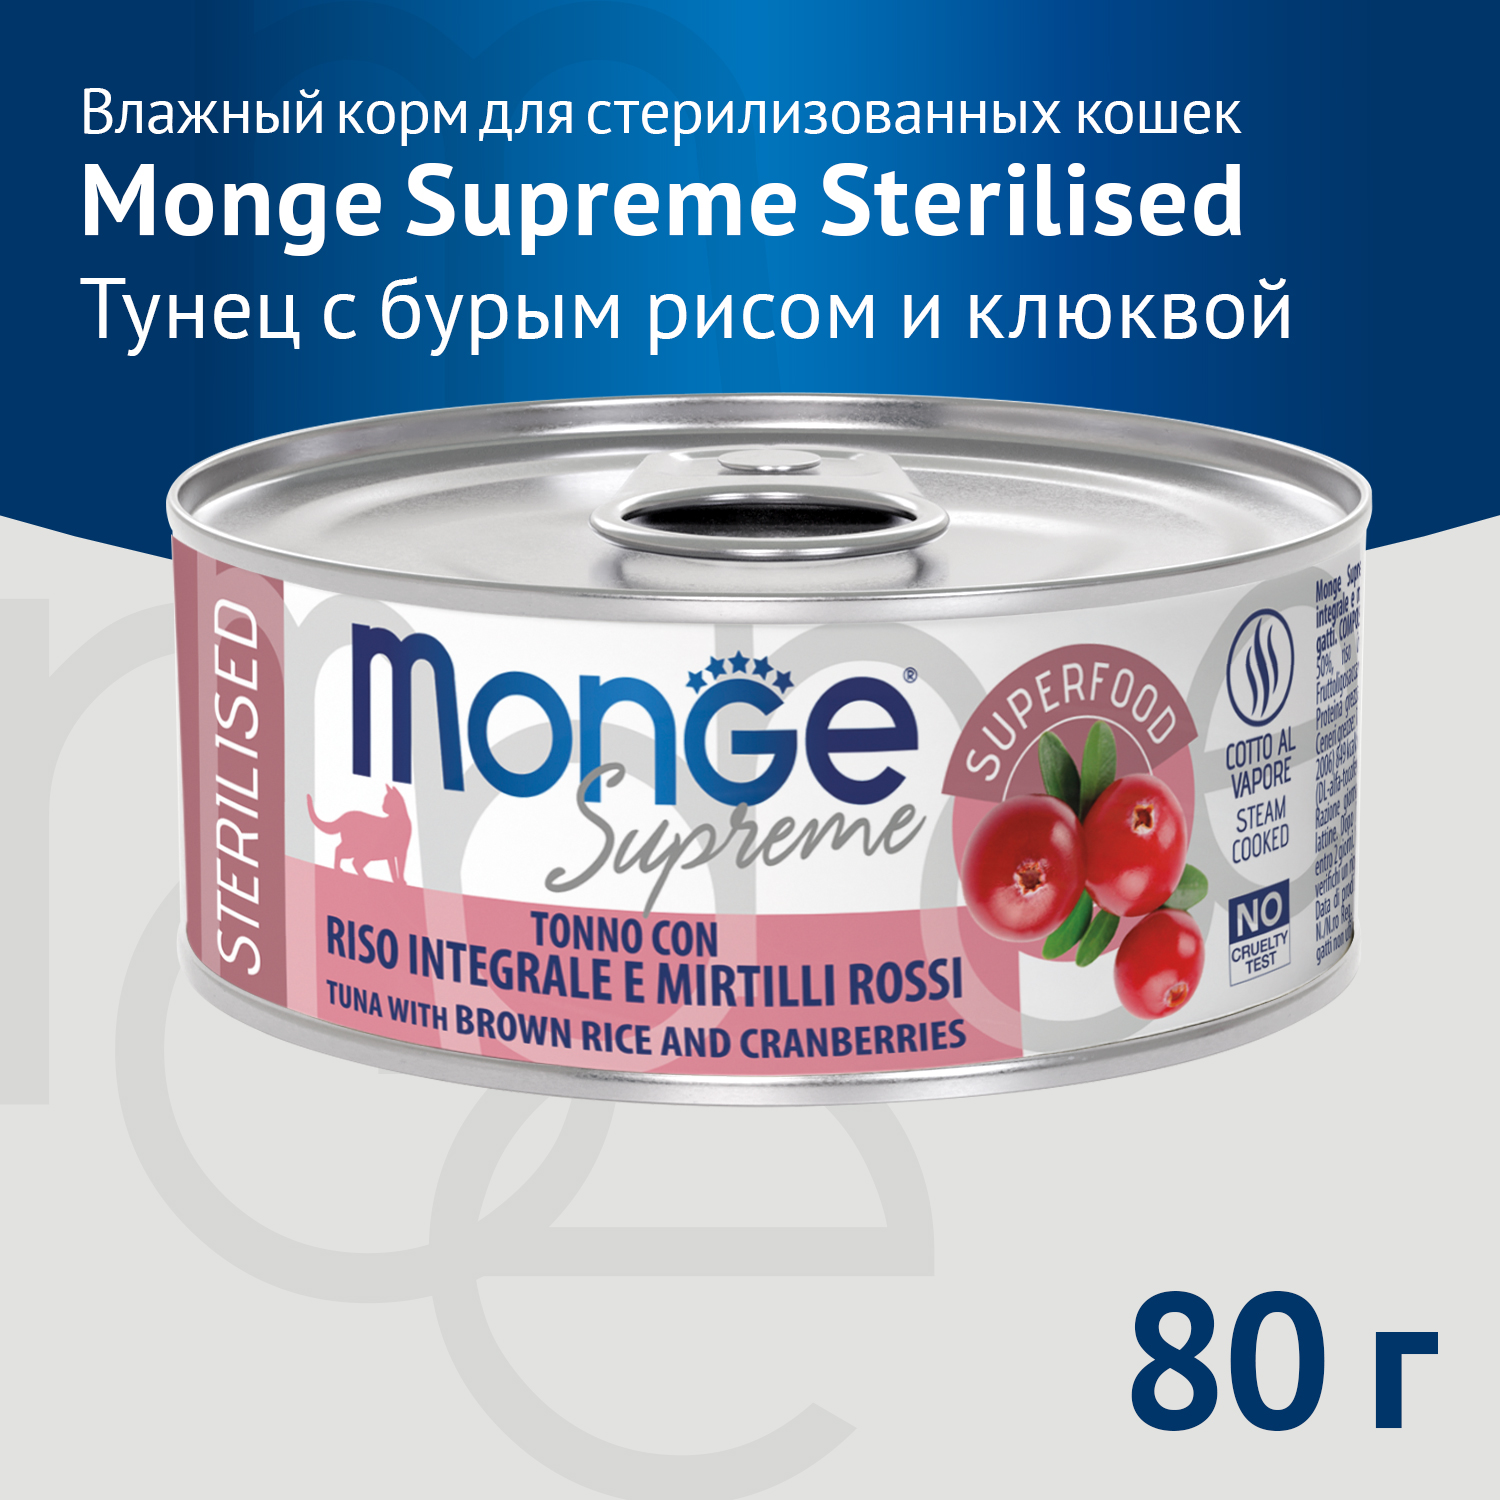 Влажный корм Monge Supreme sterilized для стерилизованных кошек из тунца с бурым рисом и клюквой, консервы 80 г